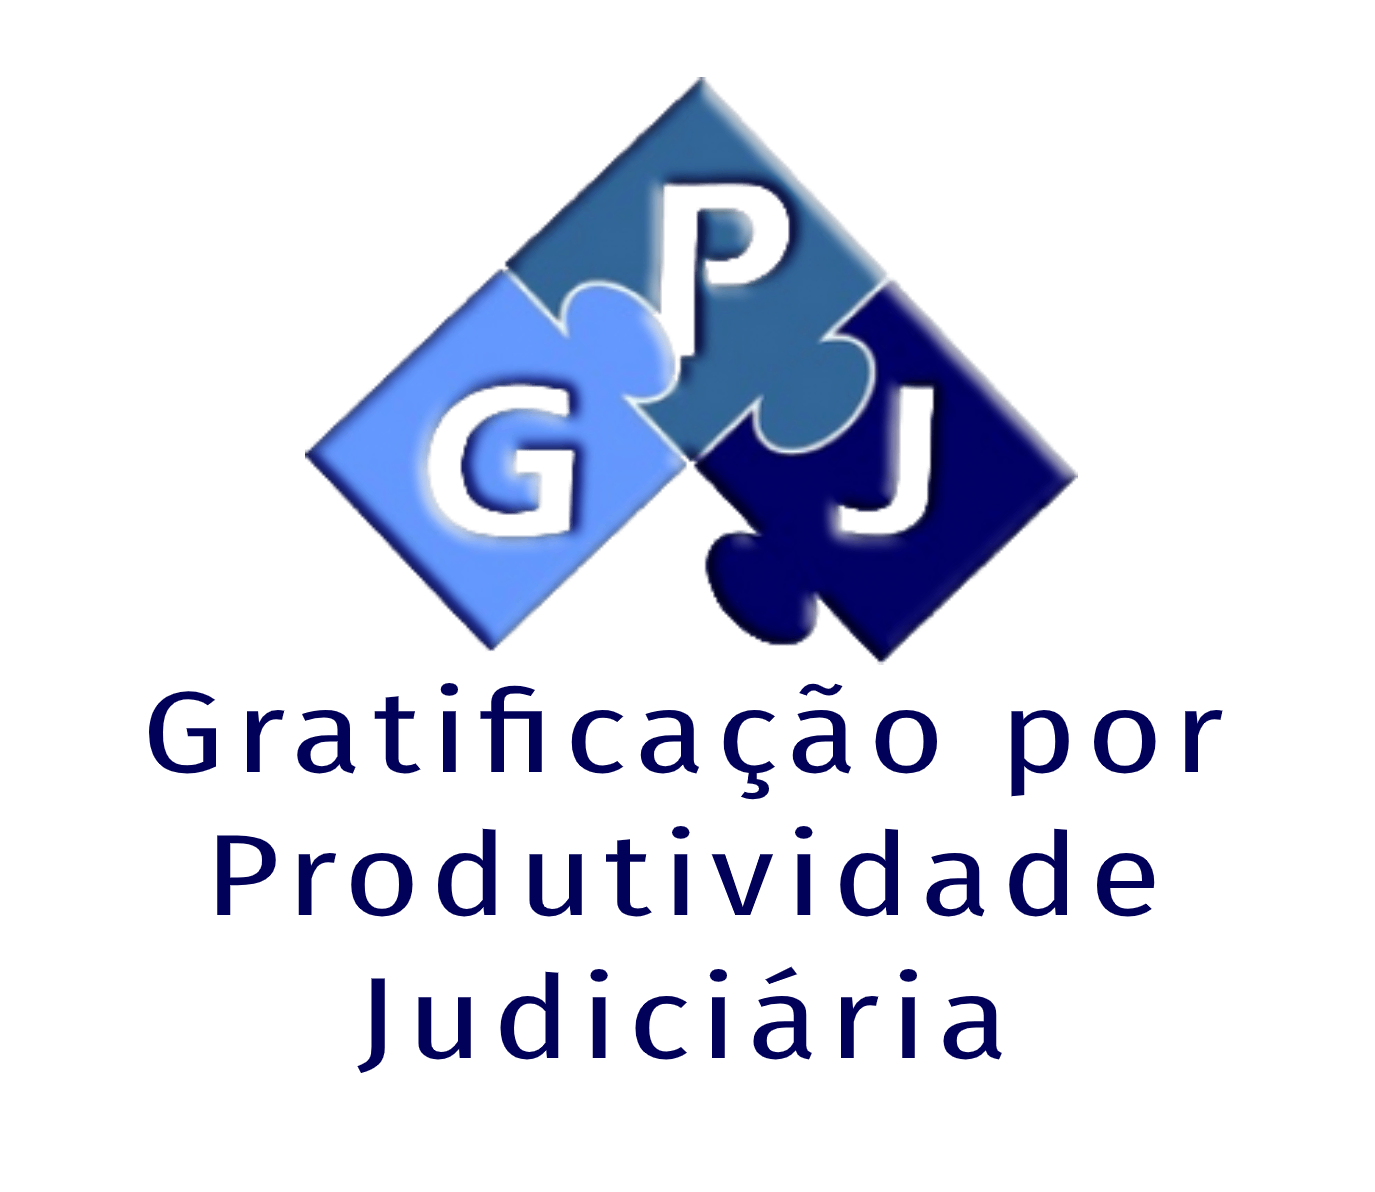 GPJ 2022 das Unidades Administrativas - Terceiro Trimestre (Jan a Set)